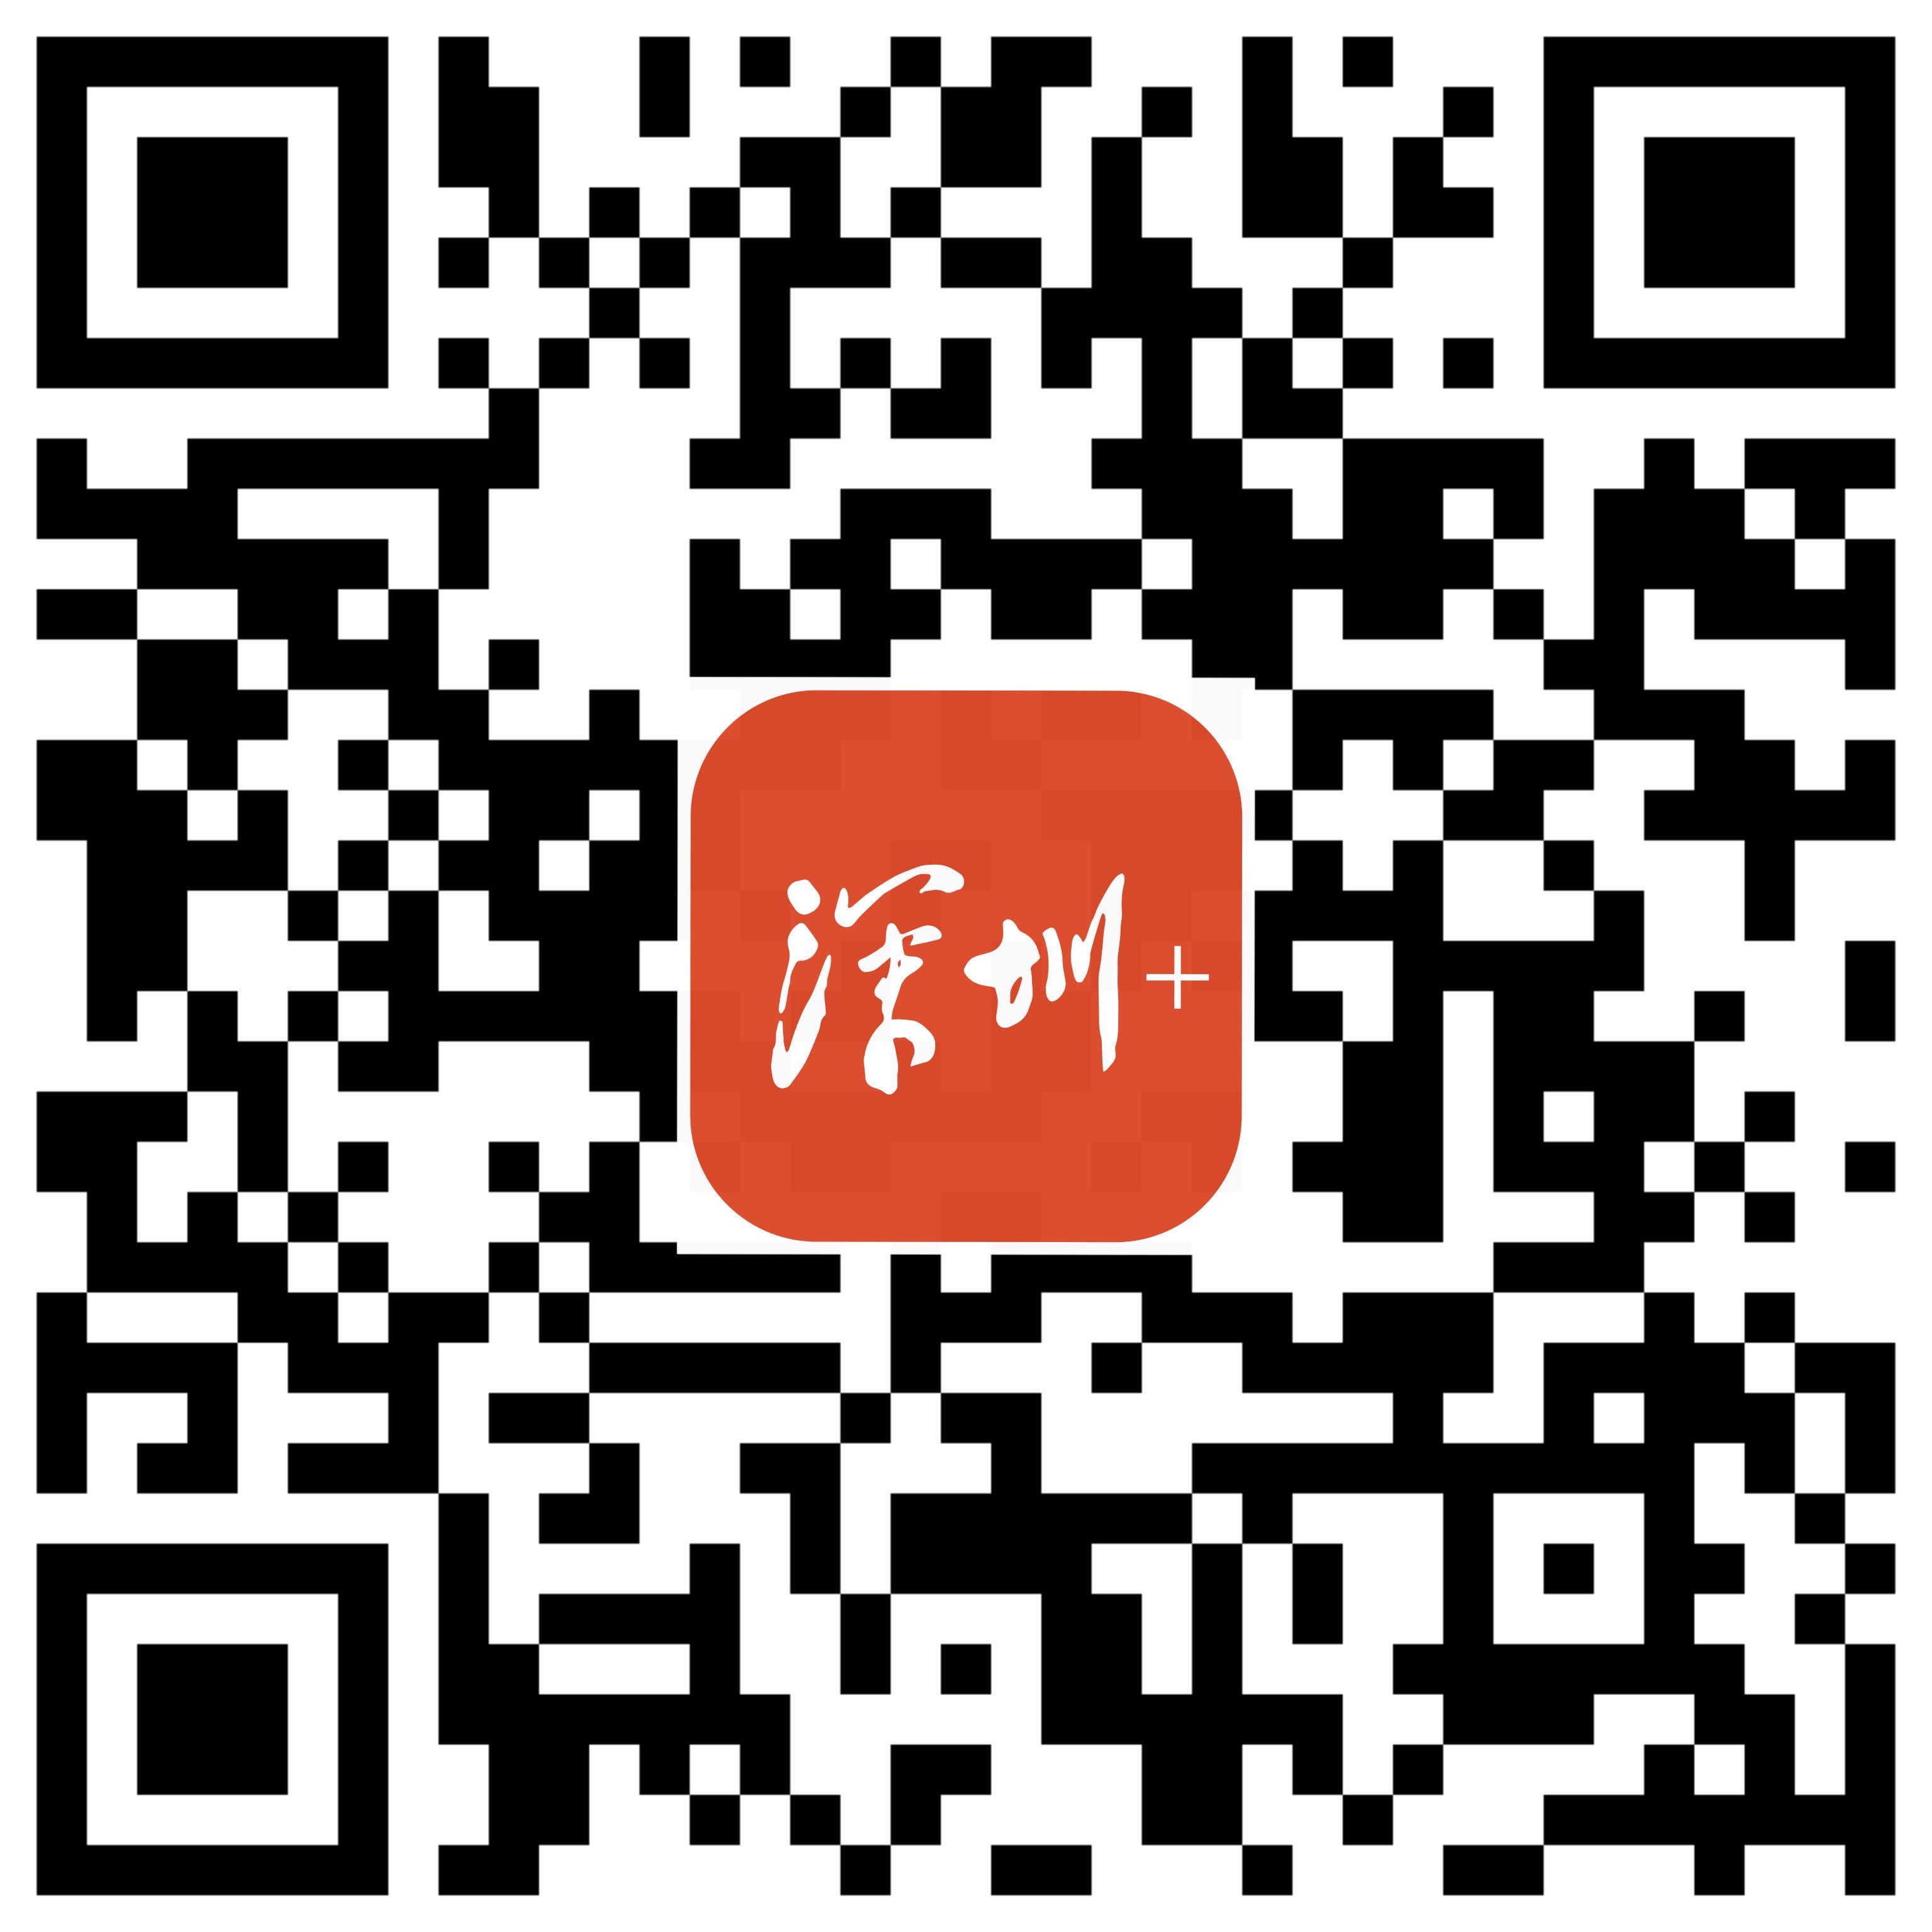 深圳+二维码带logo.jpg